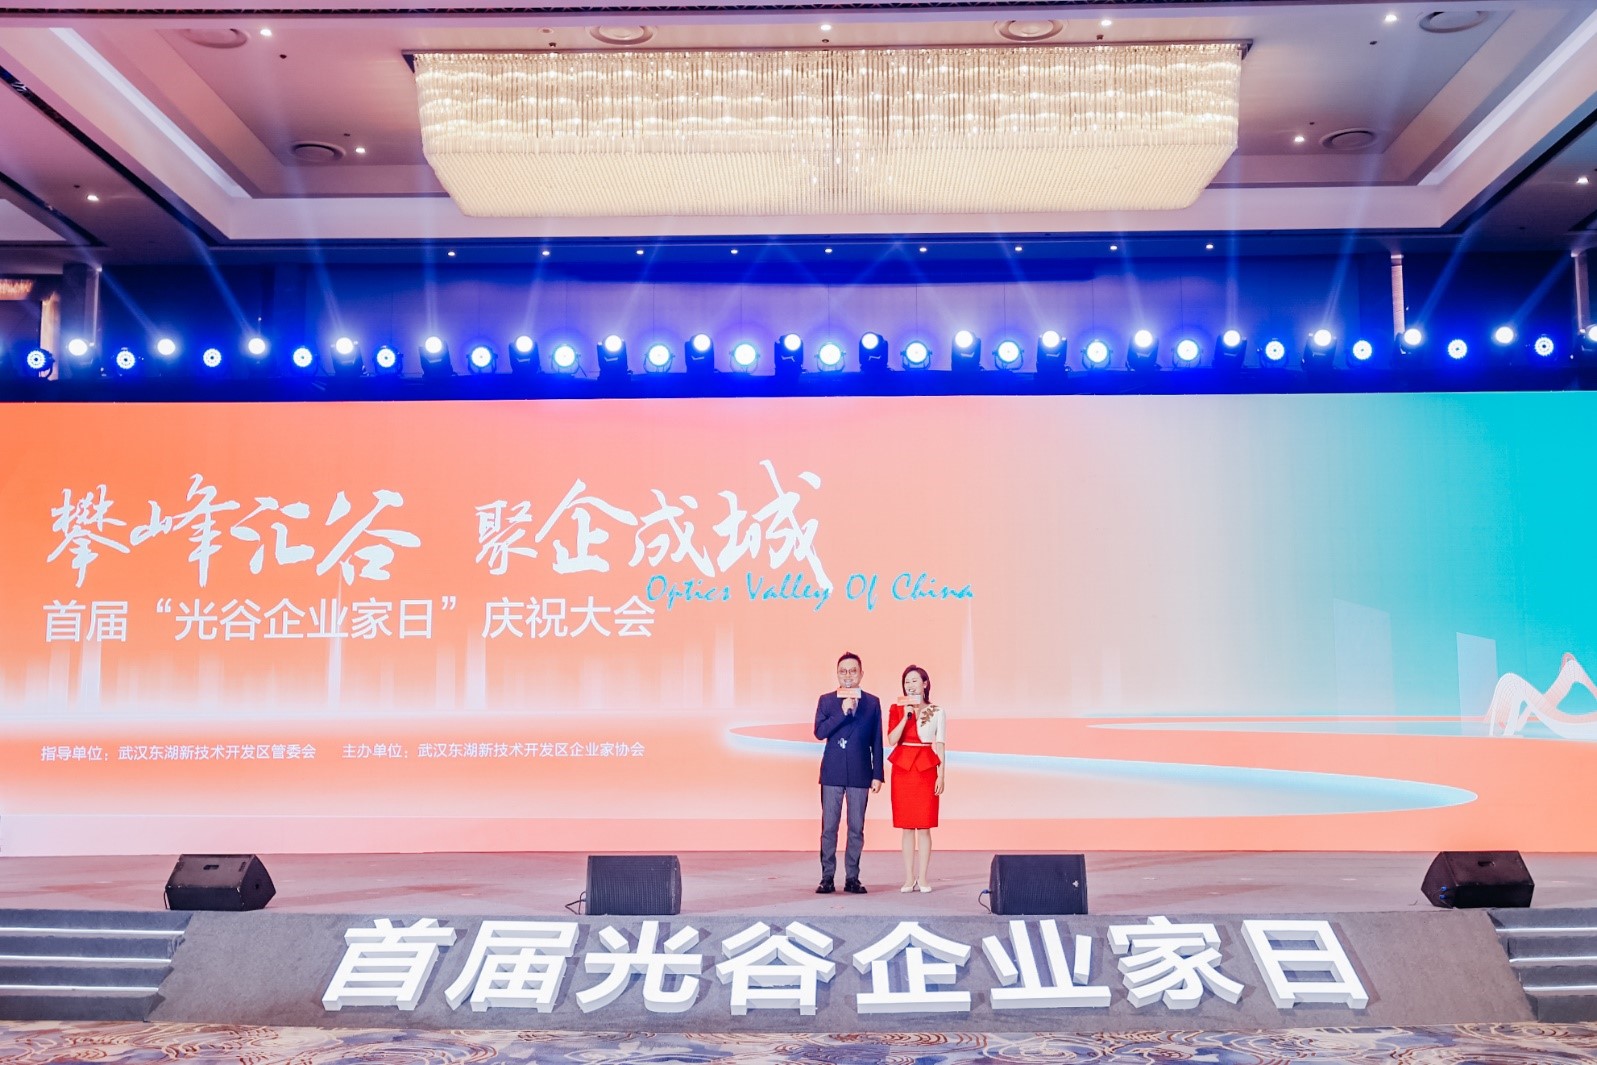 首届“光谷企业家日”庆祝大会|地大信息总经理马维峰被授予“光谷工匠企业家”荣誉称号